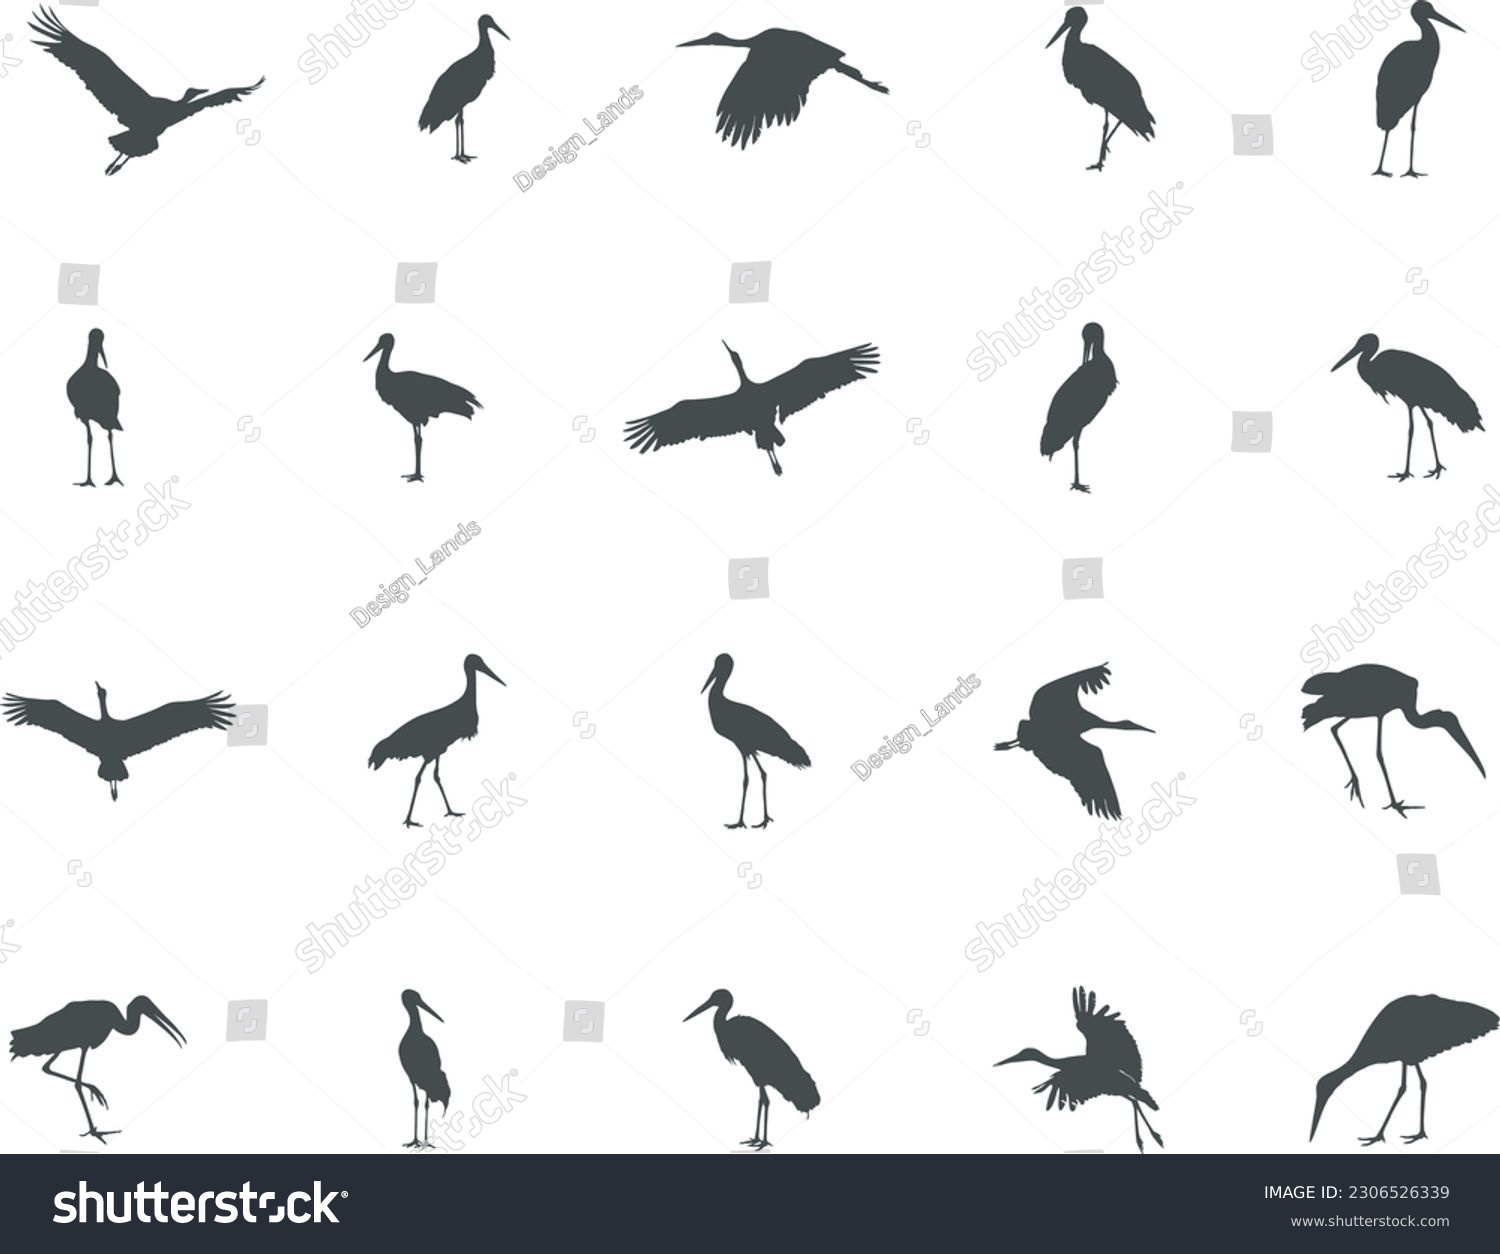 SVG of Stork silhouette, Stork vector silhouette, Flying stork silhouette, Stork silhouette clip art. svg